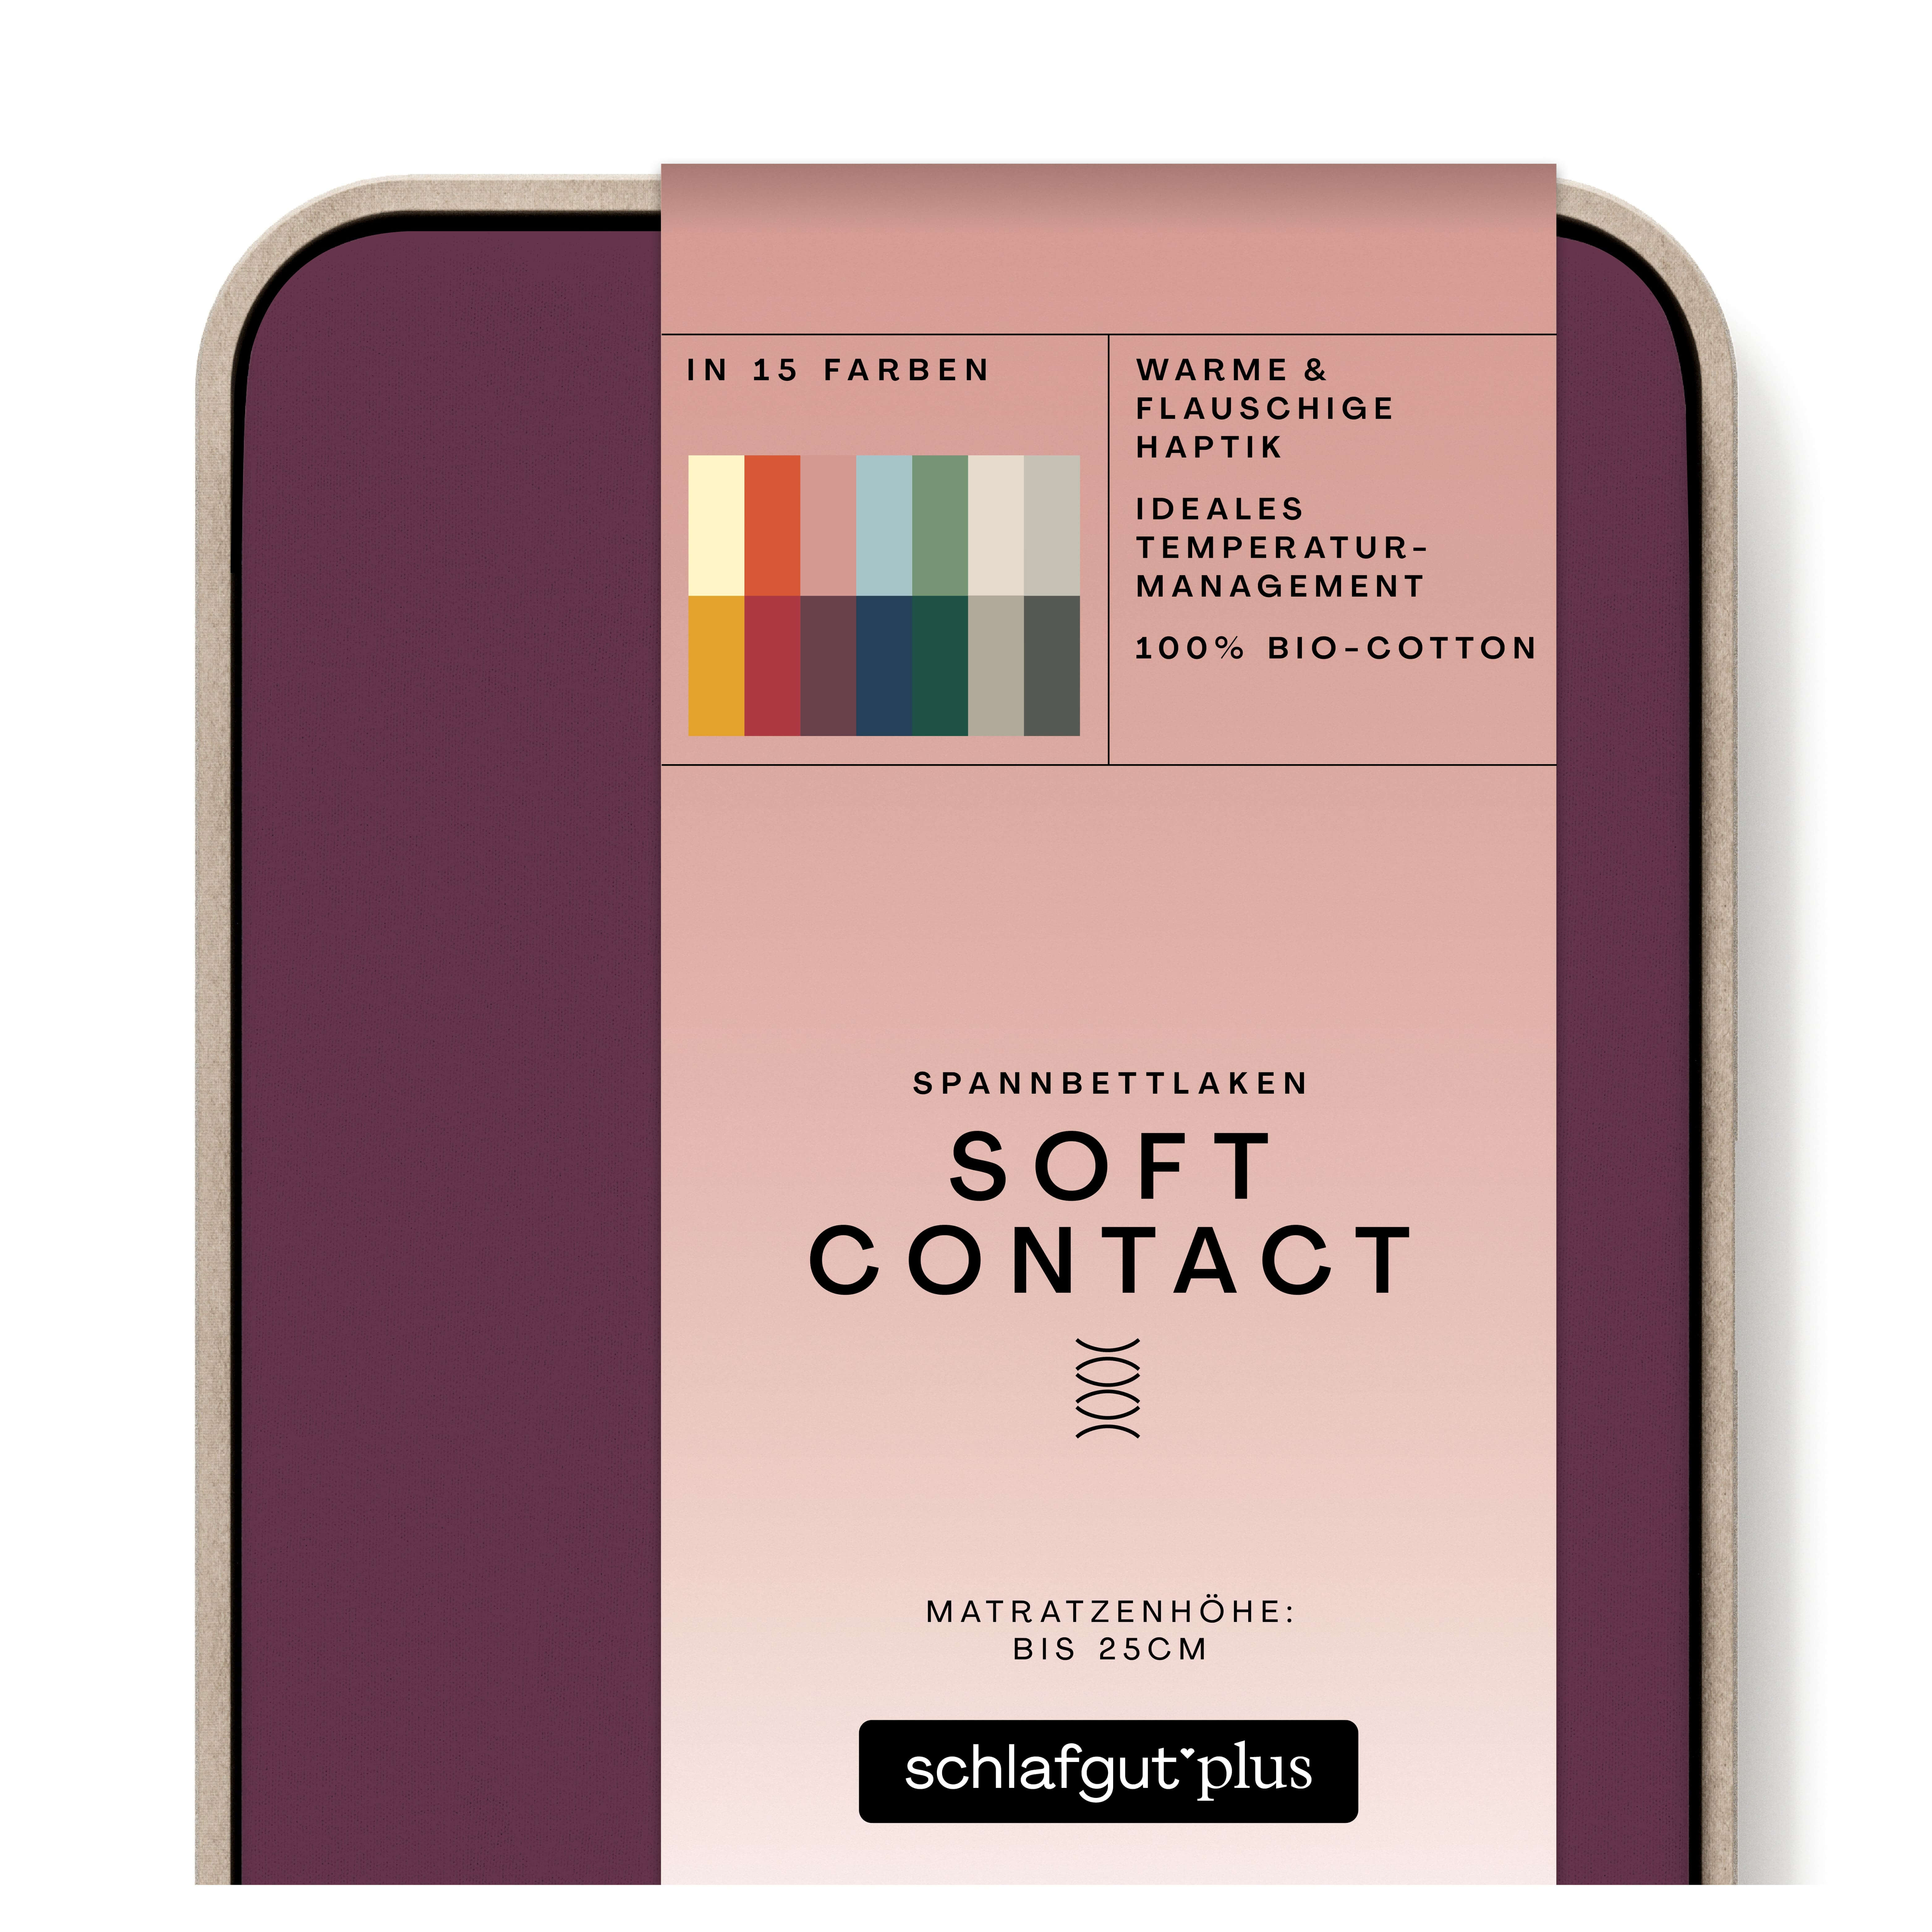 Das Produktbild vom Spannbettlaken der Reihe Soft Contact in Farbe purple deep von Schlafgut